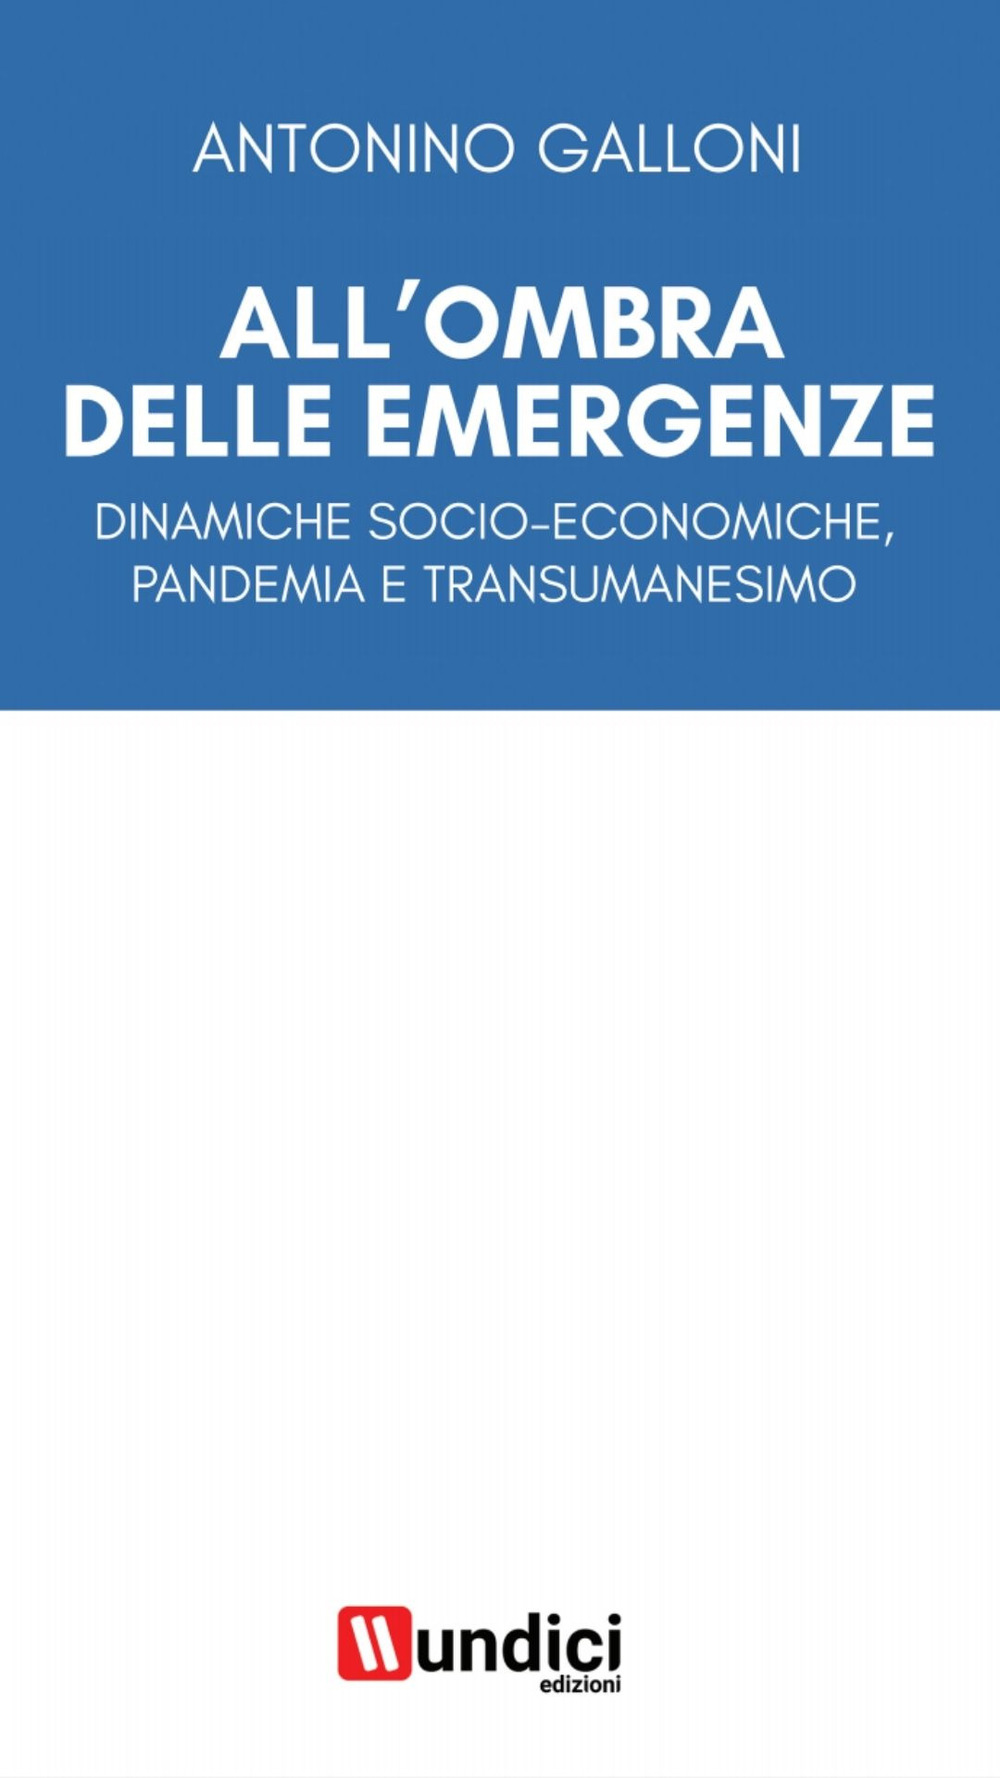 All'ombra delle emergenze. Dinamiche socio-economiche, pandemia e transumanesimo